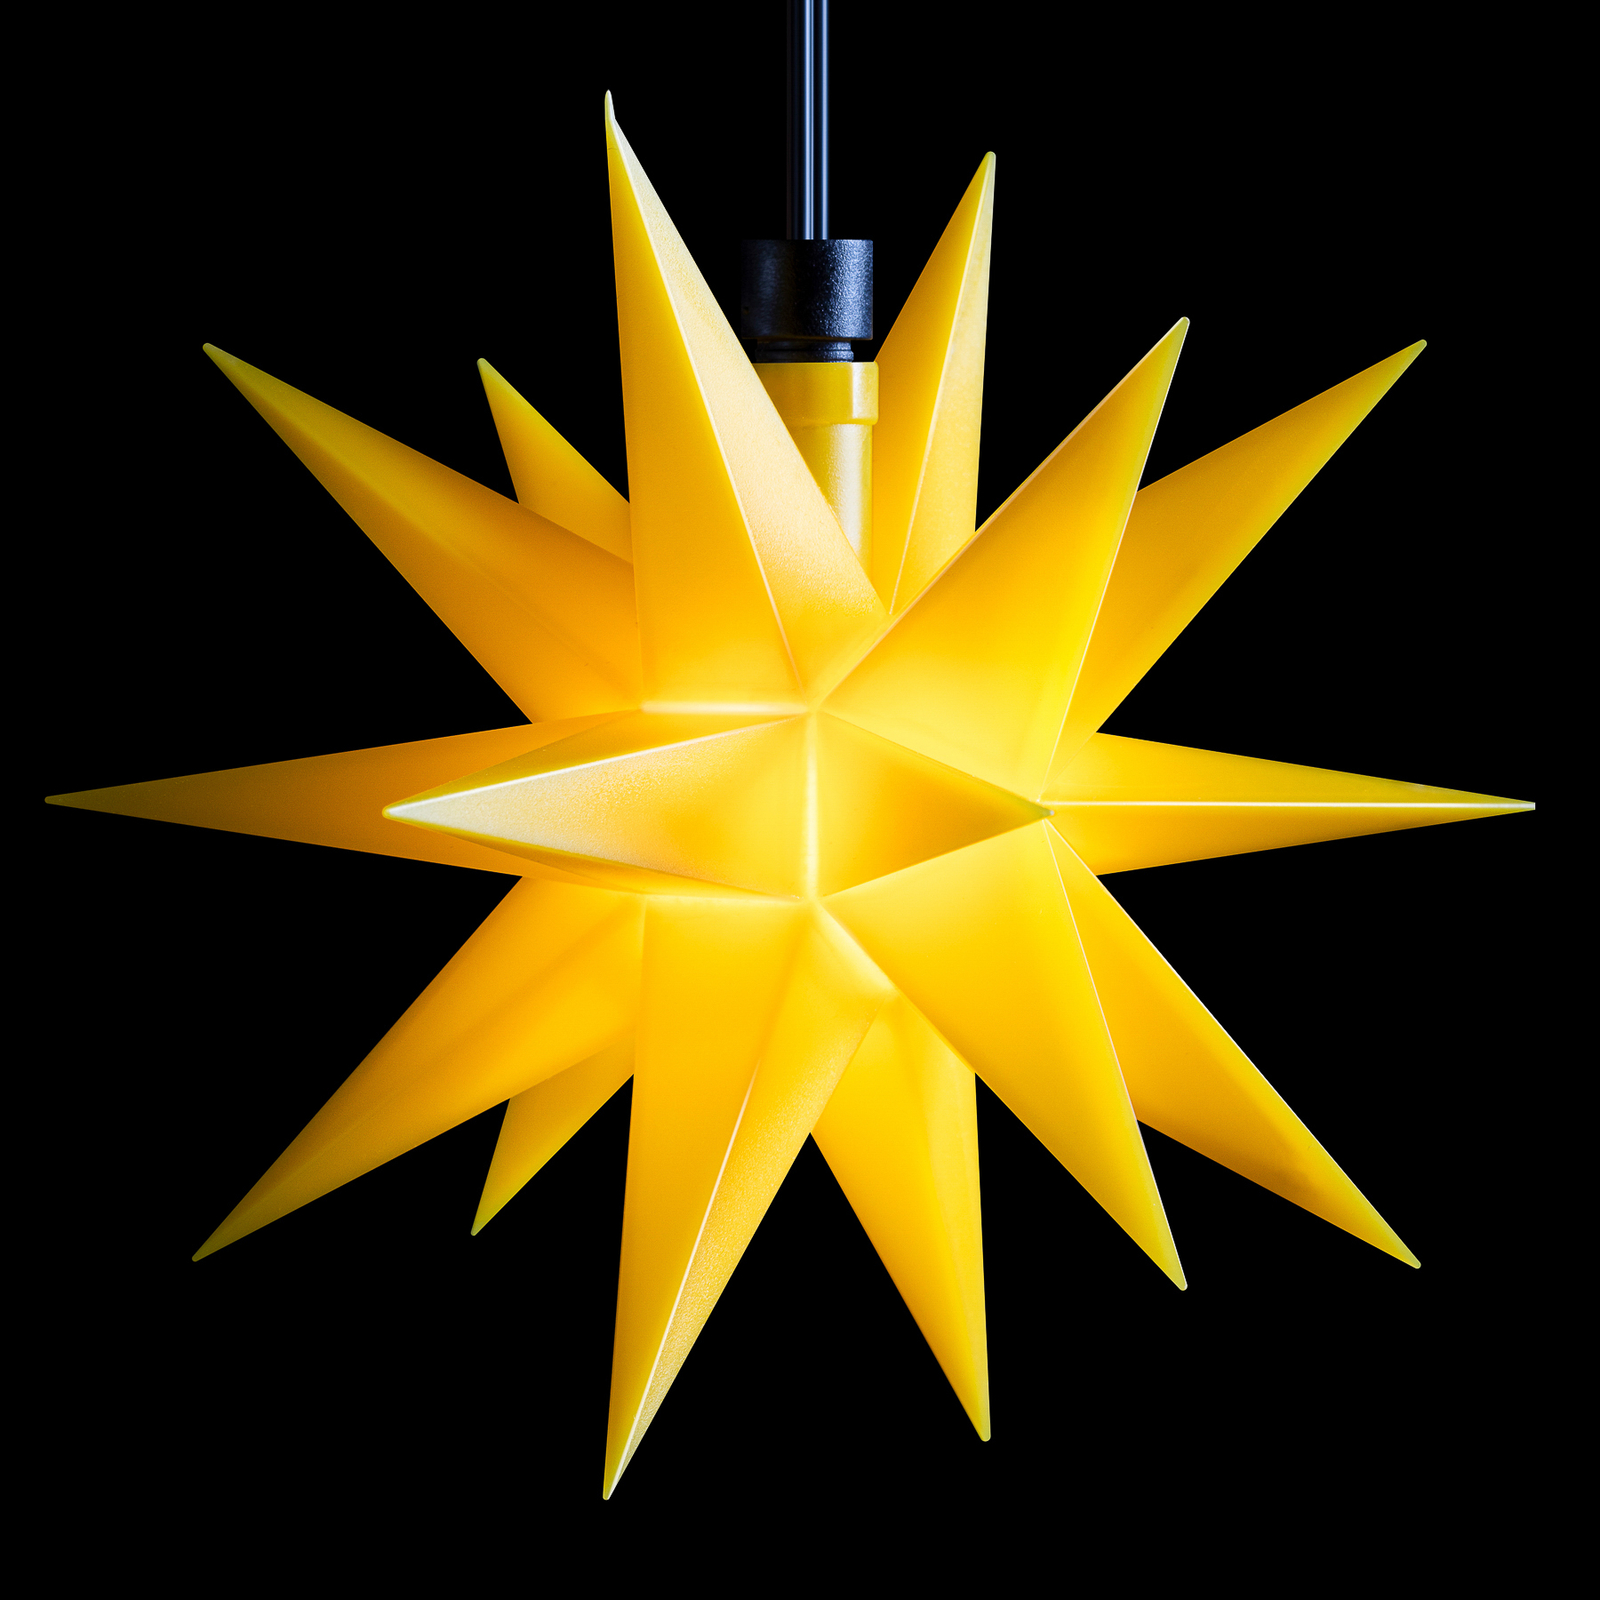 LED pravljične luči mini zvezde na prostem 3-svetlobne rumene